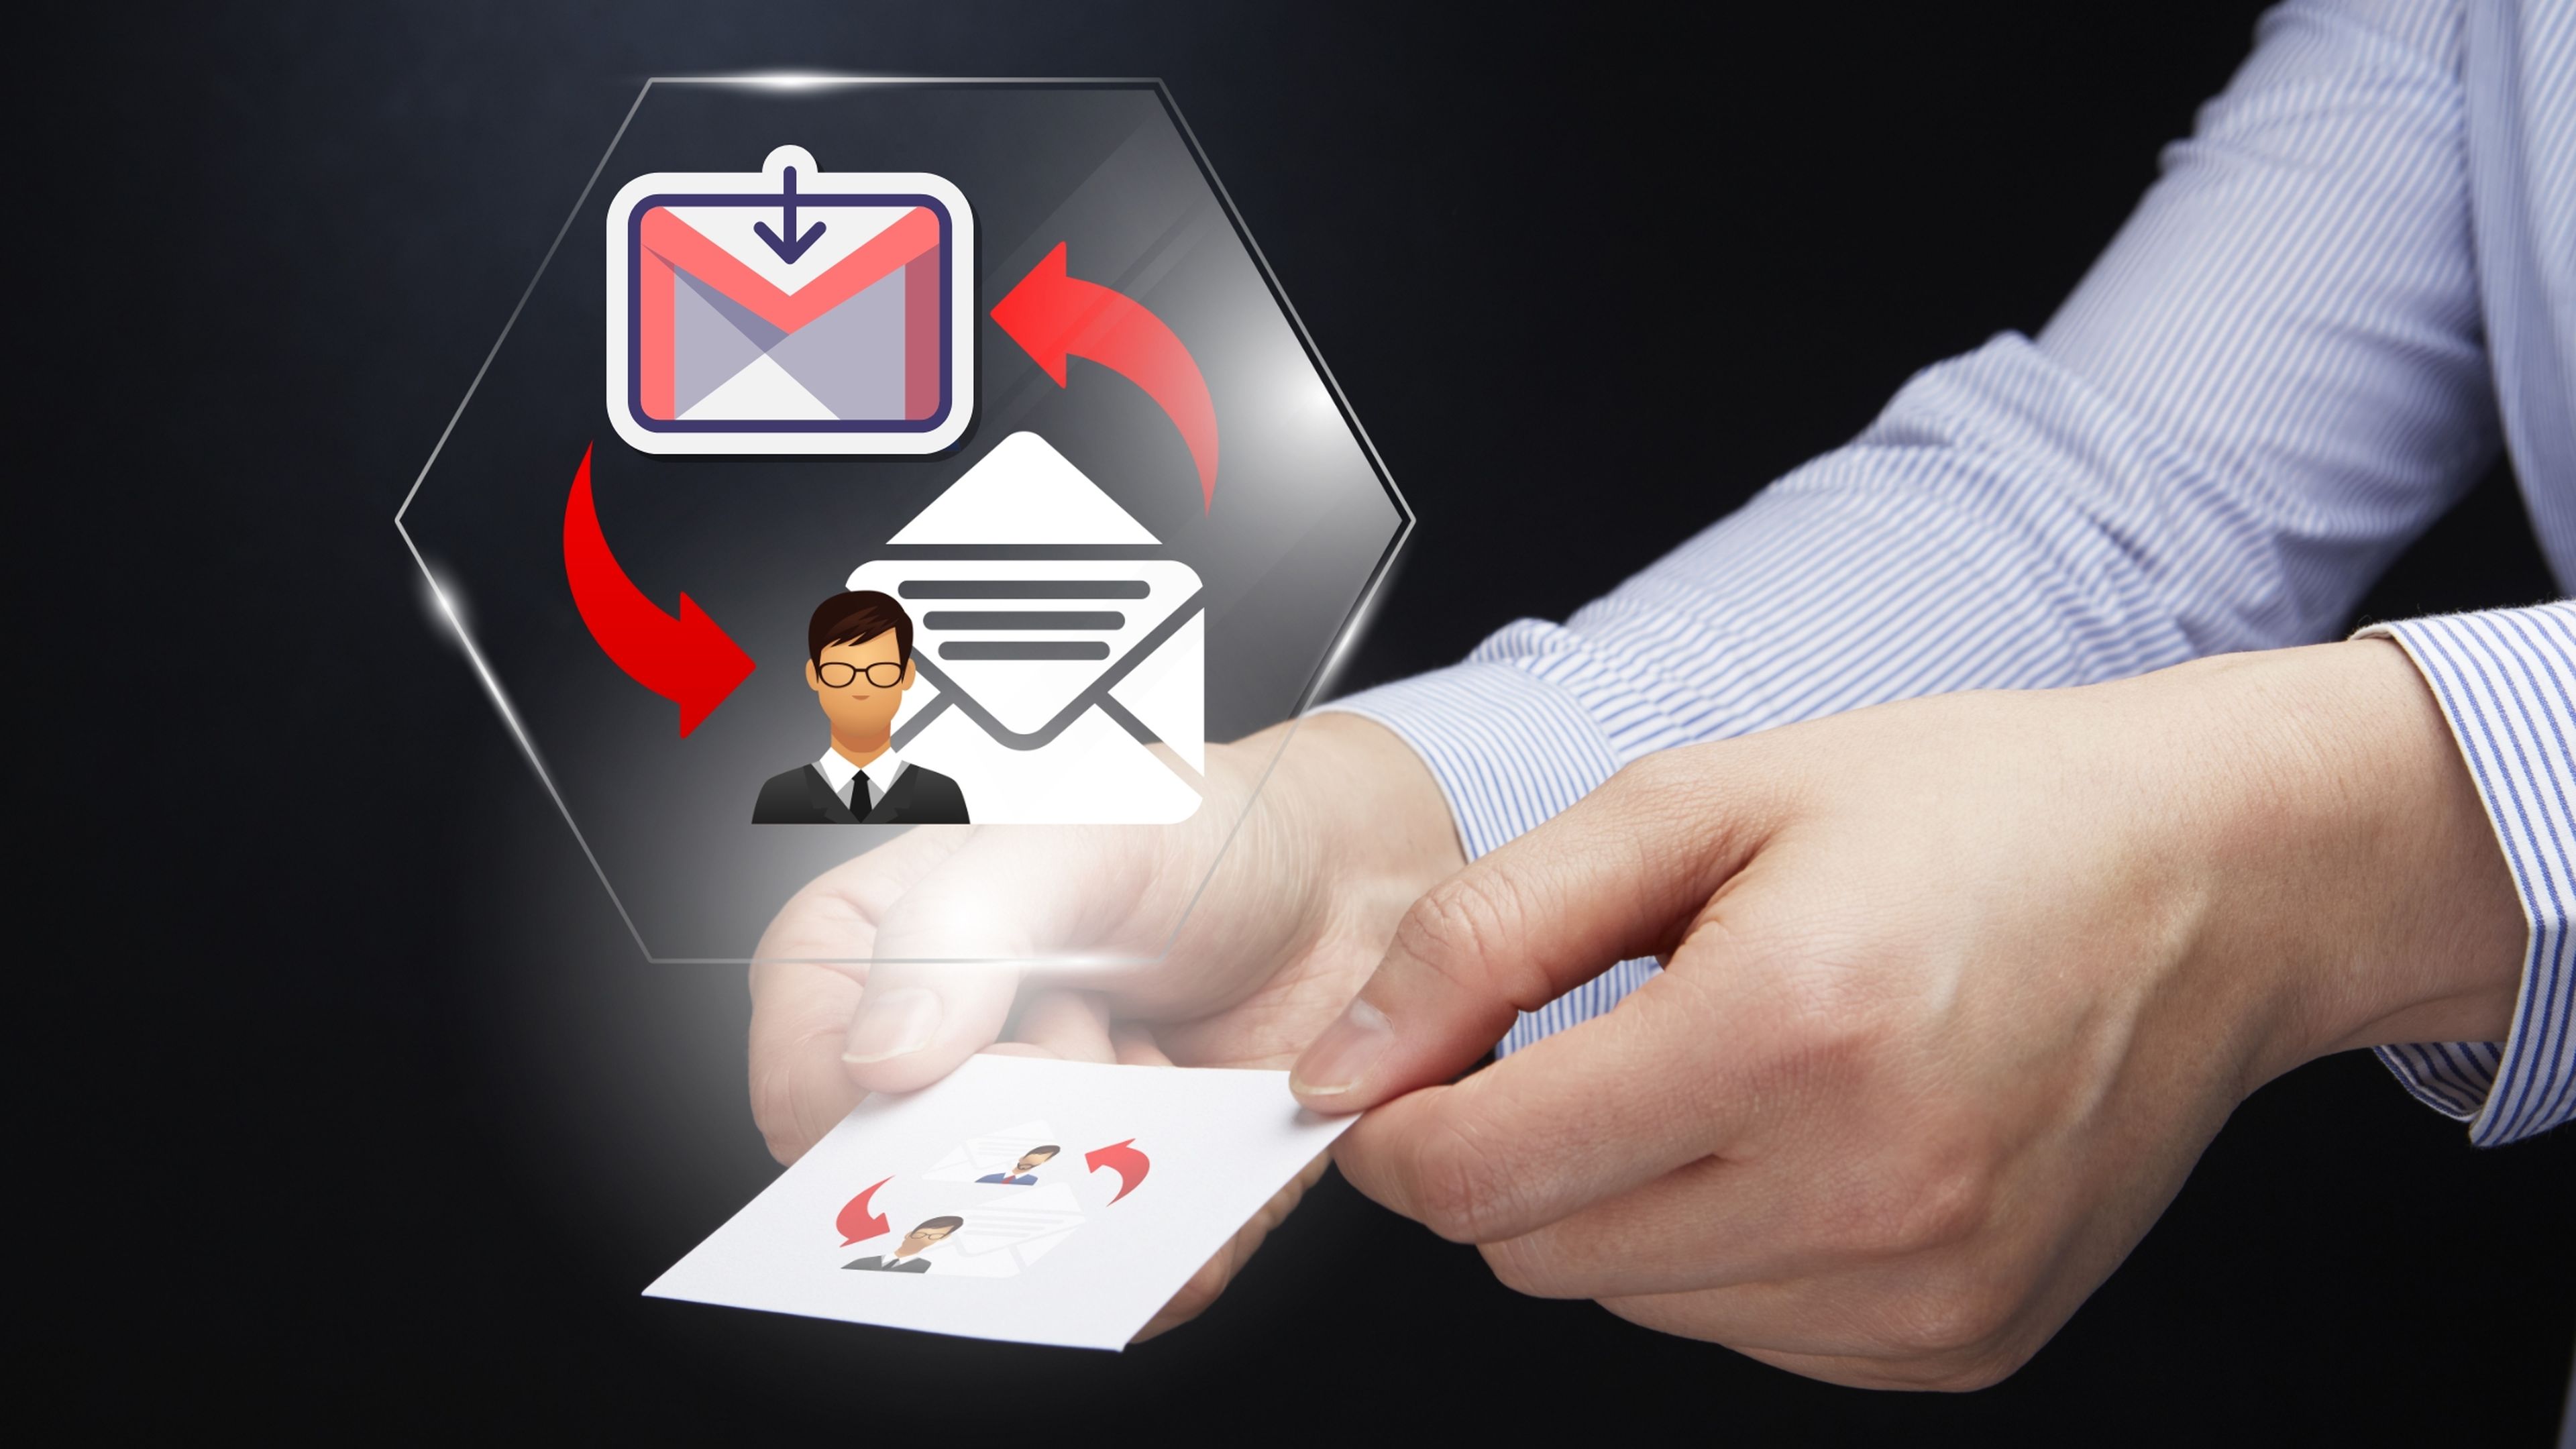 CÃ³mo crear una firma personalizada en Gmail desde tu ordenador o mÃ³vil